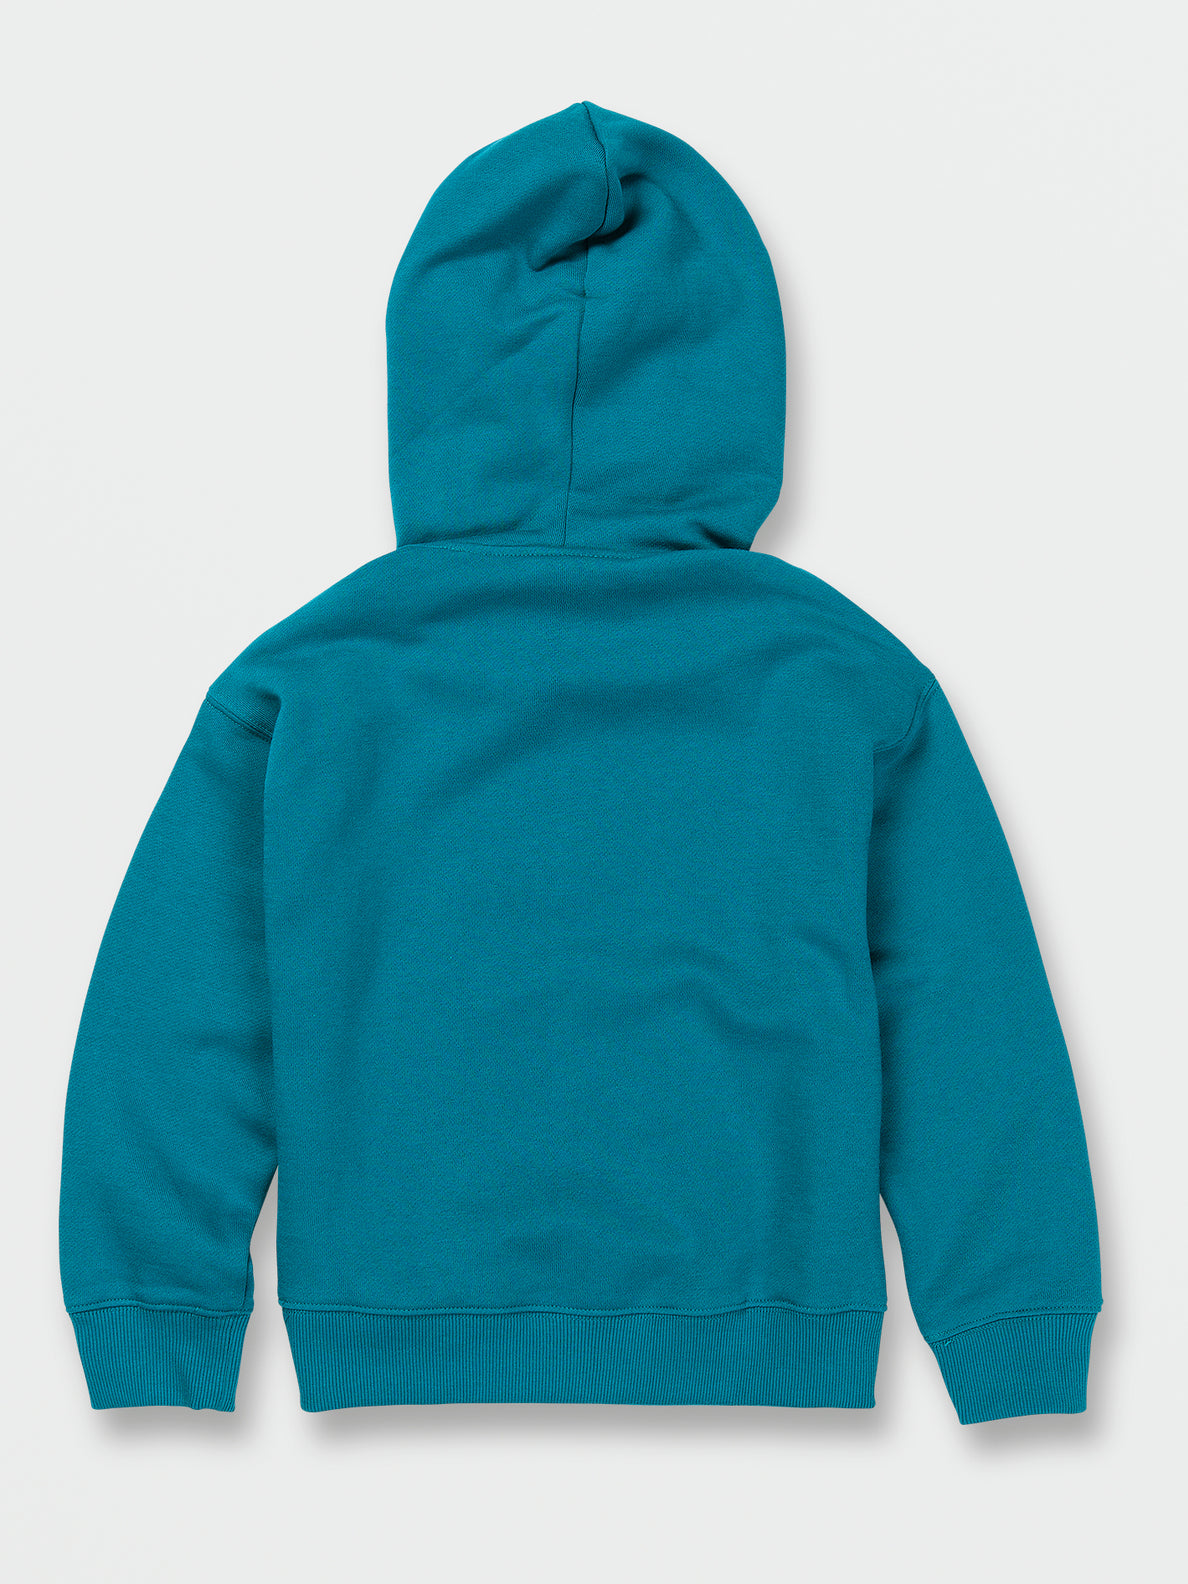 Little Boys Strike Hood Pullover Sweatshirt - Ocean Teal